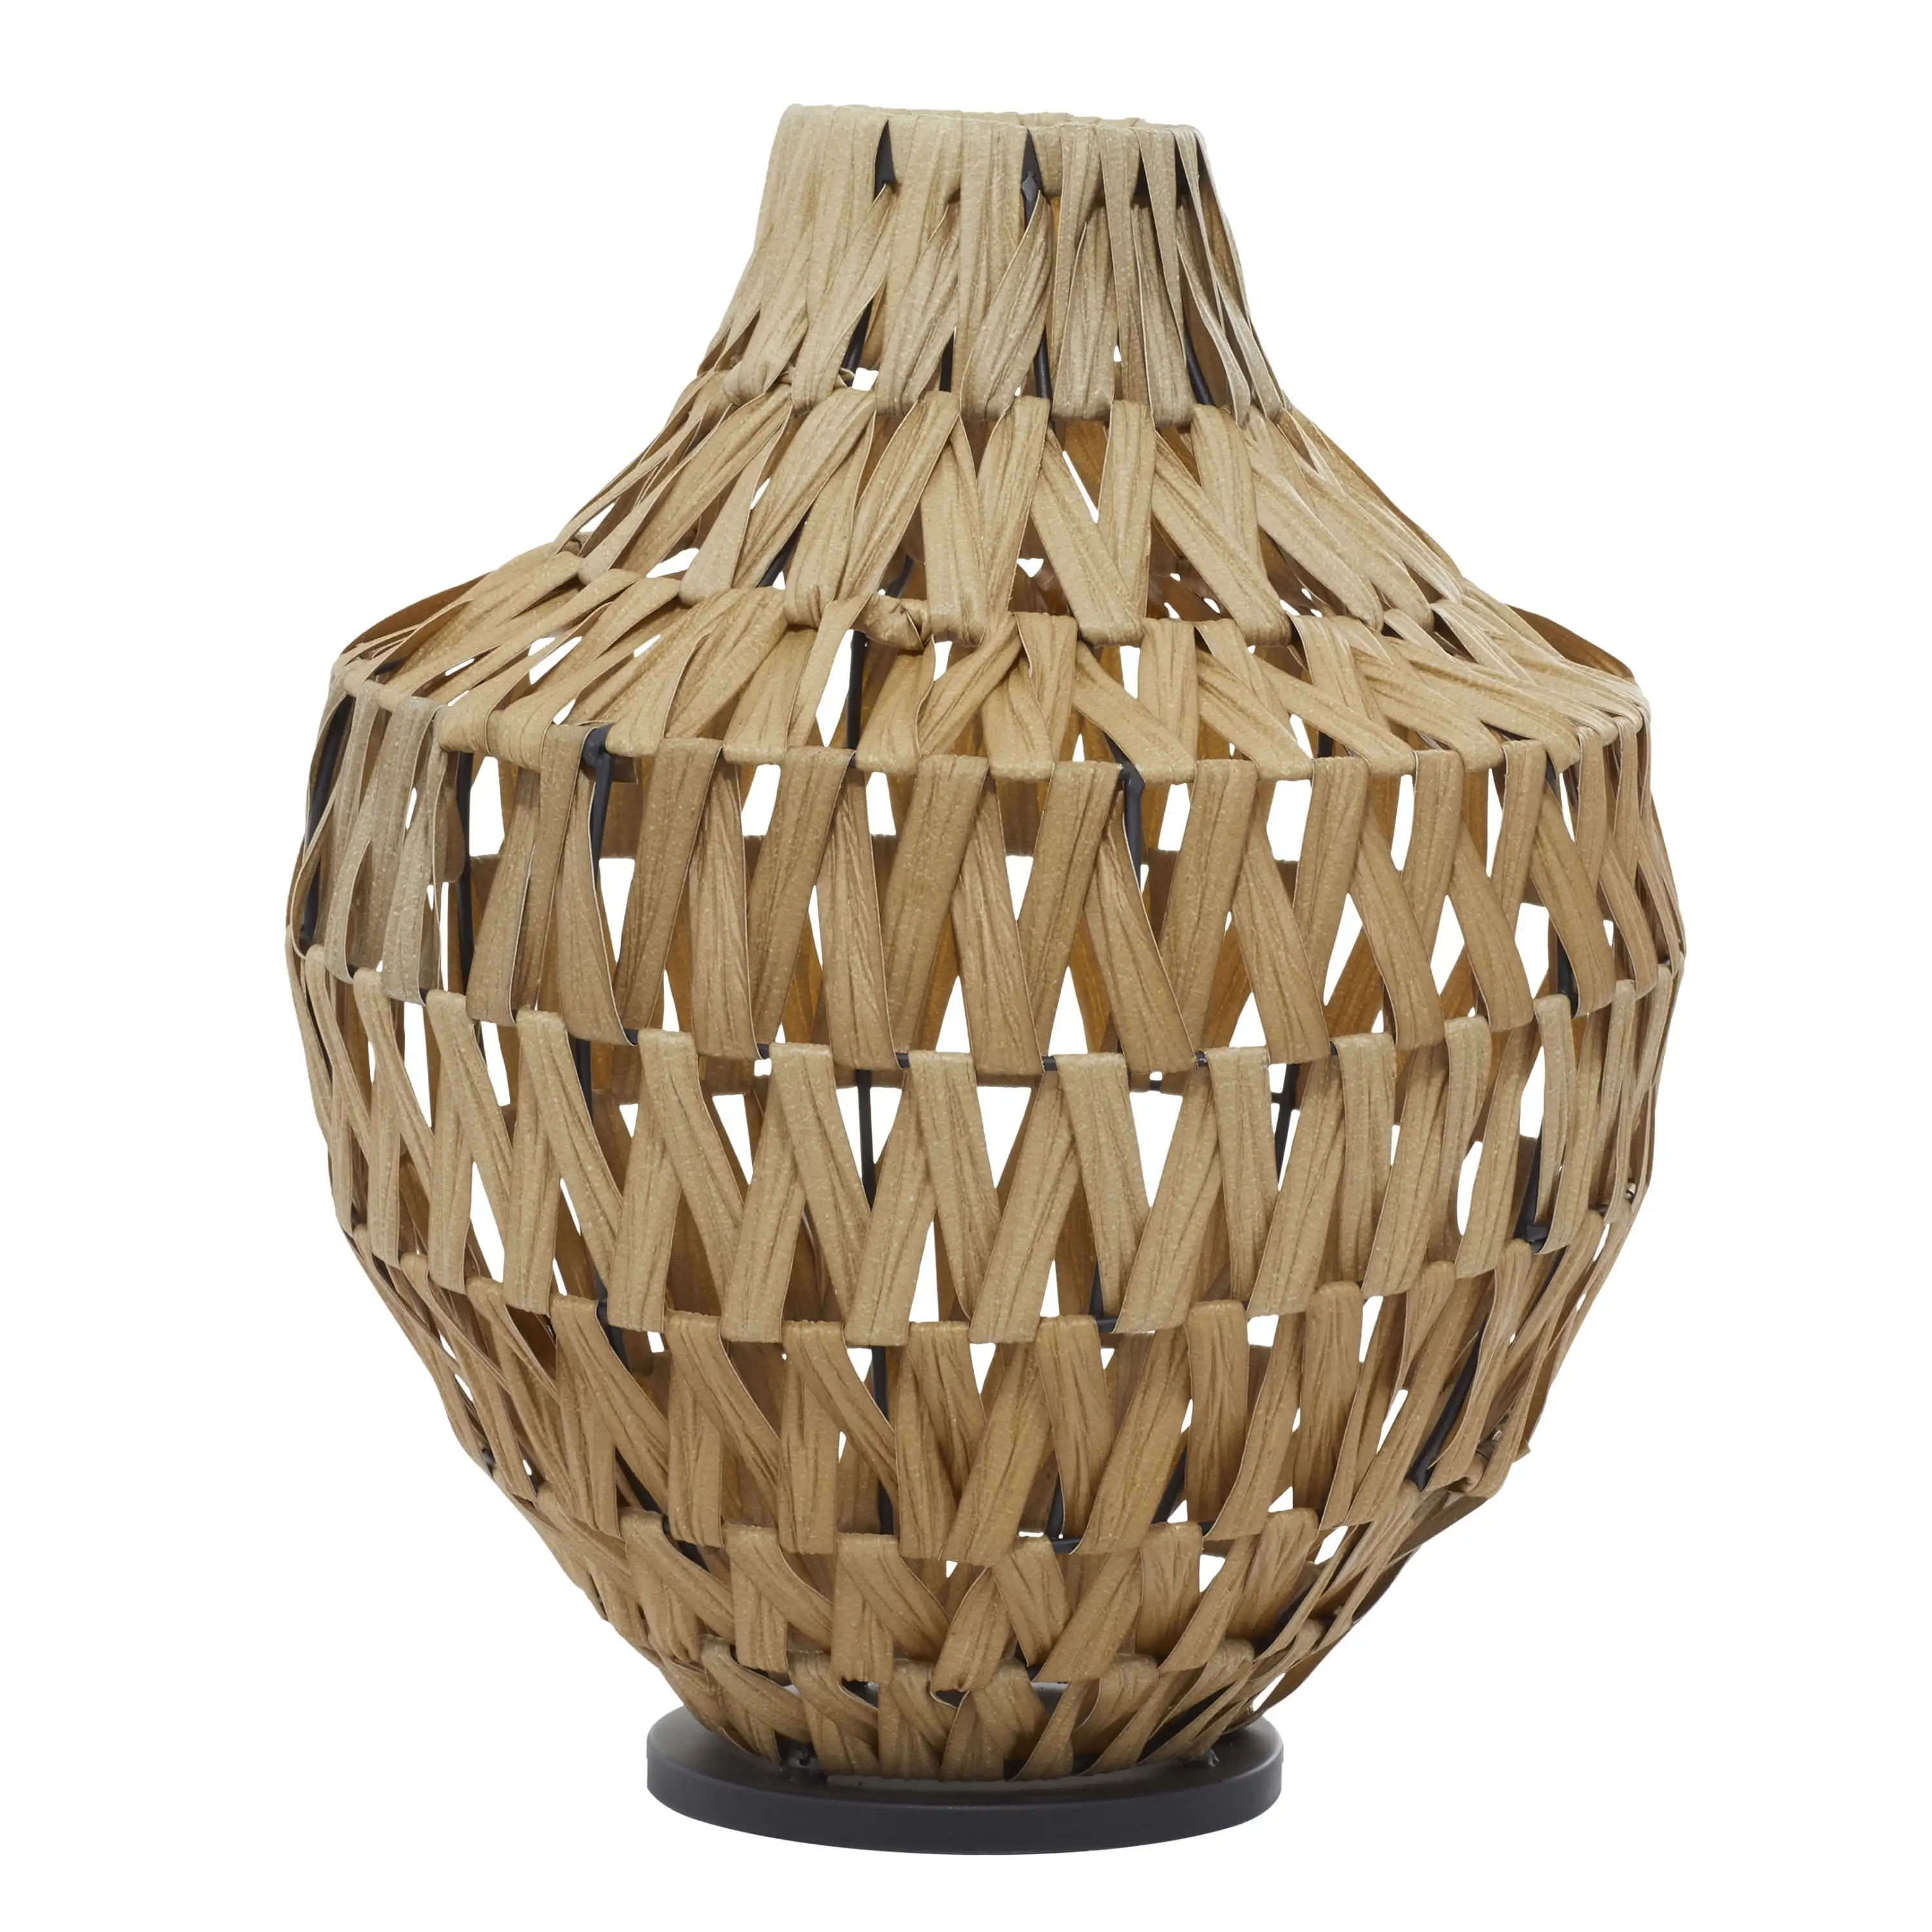 

Плетеная коричневая пластиковая ваза DecMode 17 дюймов ручной работы из ротанга с черным металлическим основанием